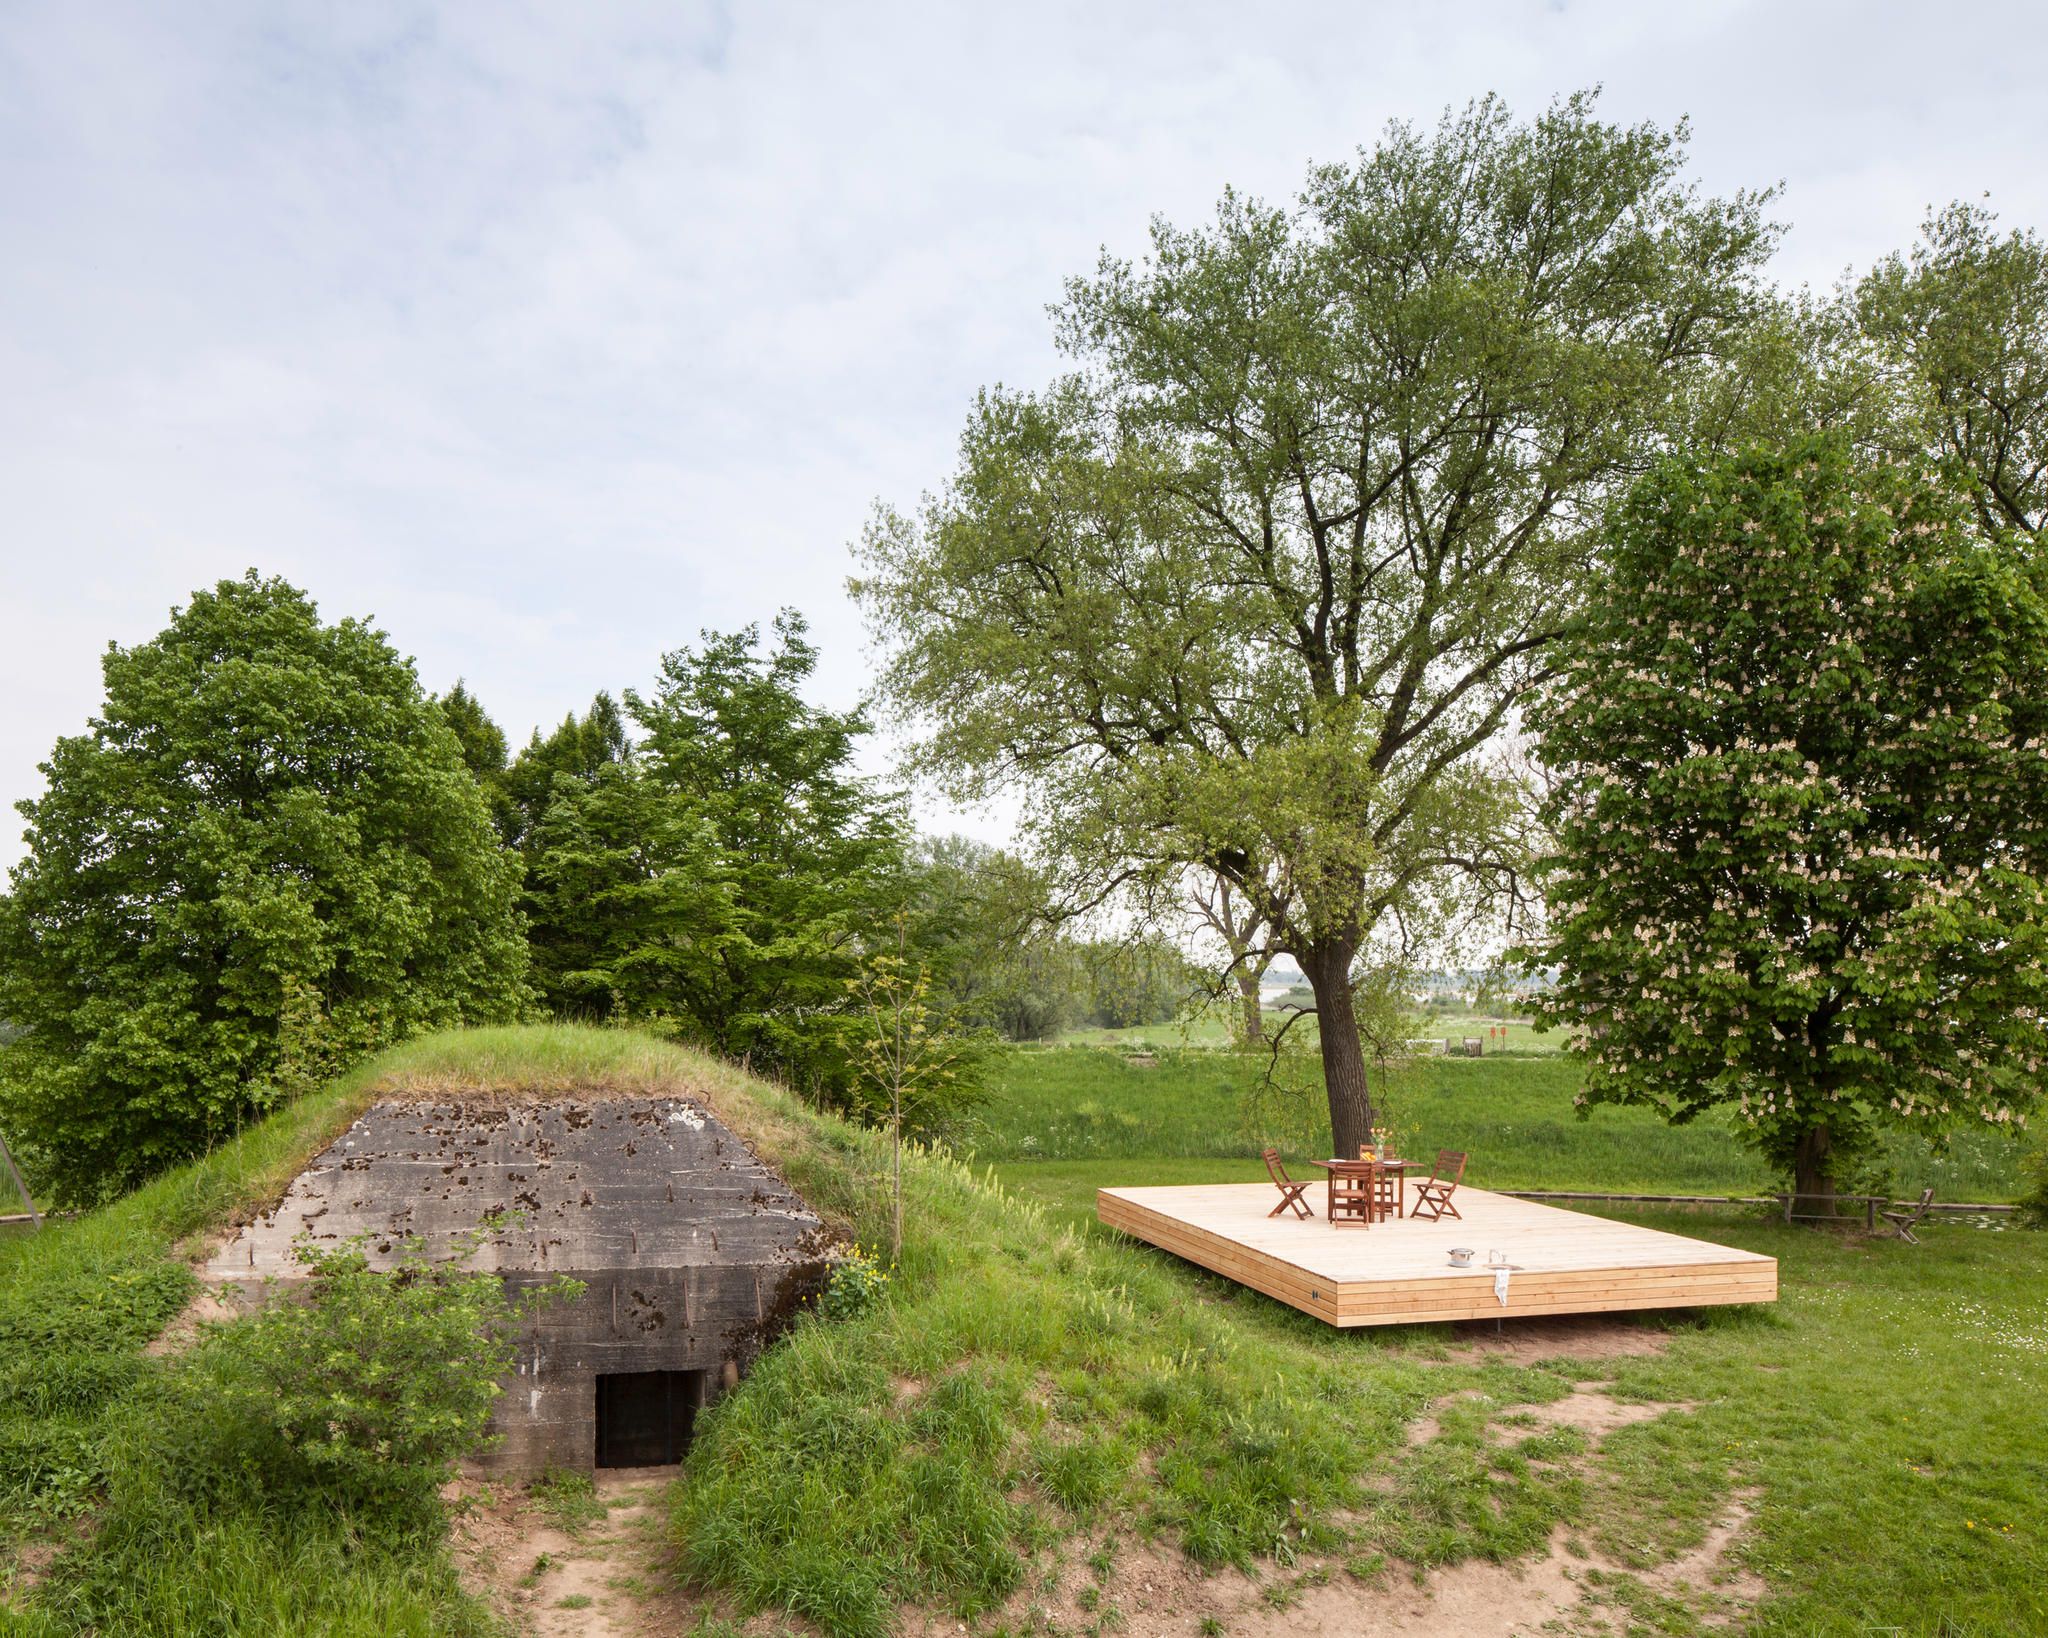 B-ILD Bunker: Diese Mini-Festung ist in Wirklichkeit ein Hotel